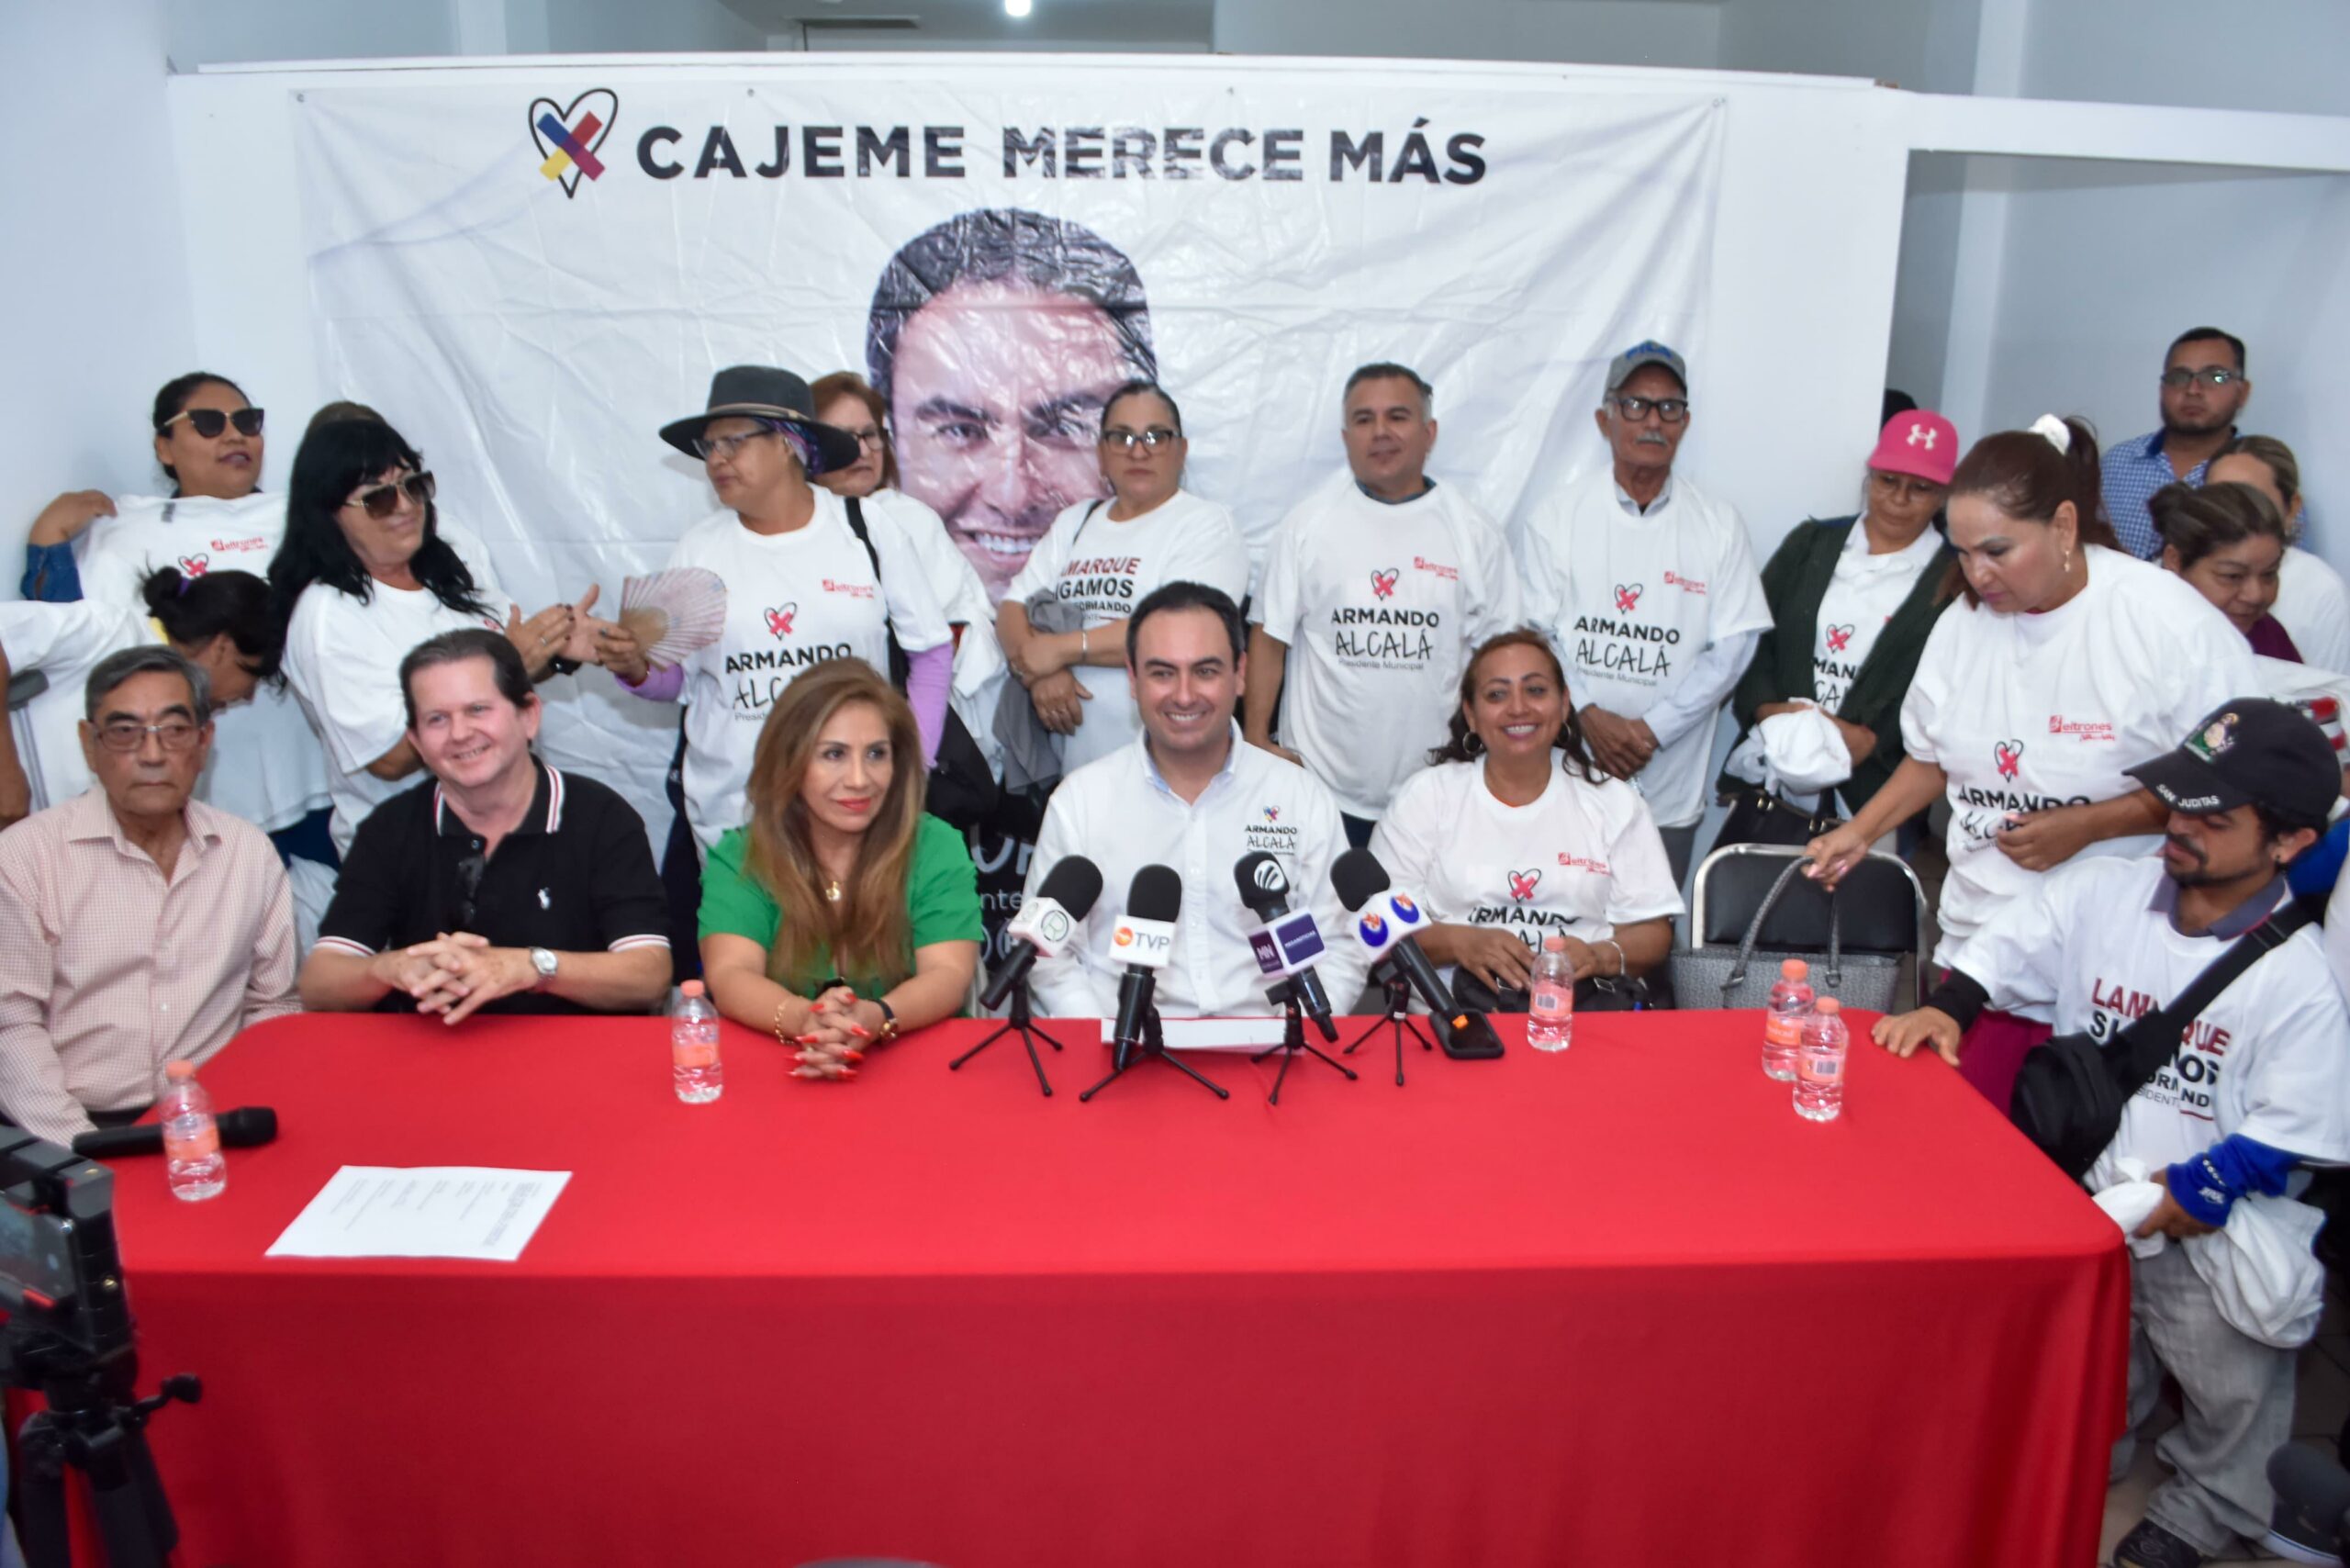 Unión sin precedentes en Cajeme apoyando a Armando Alcalá